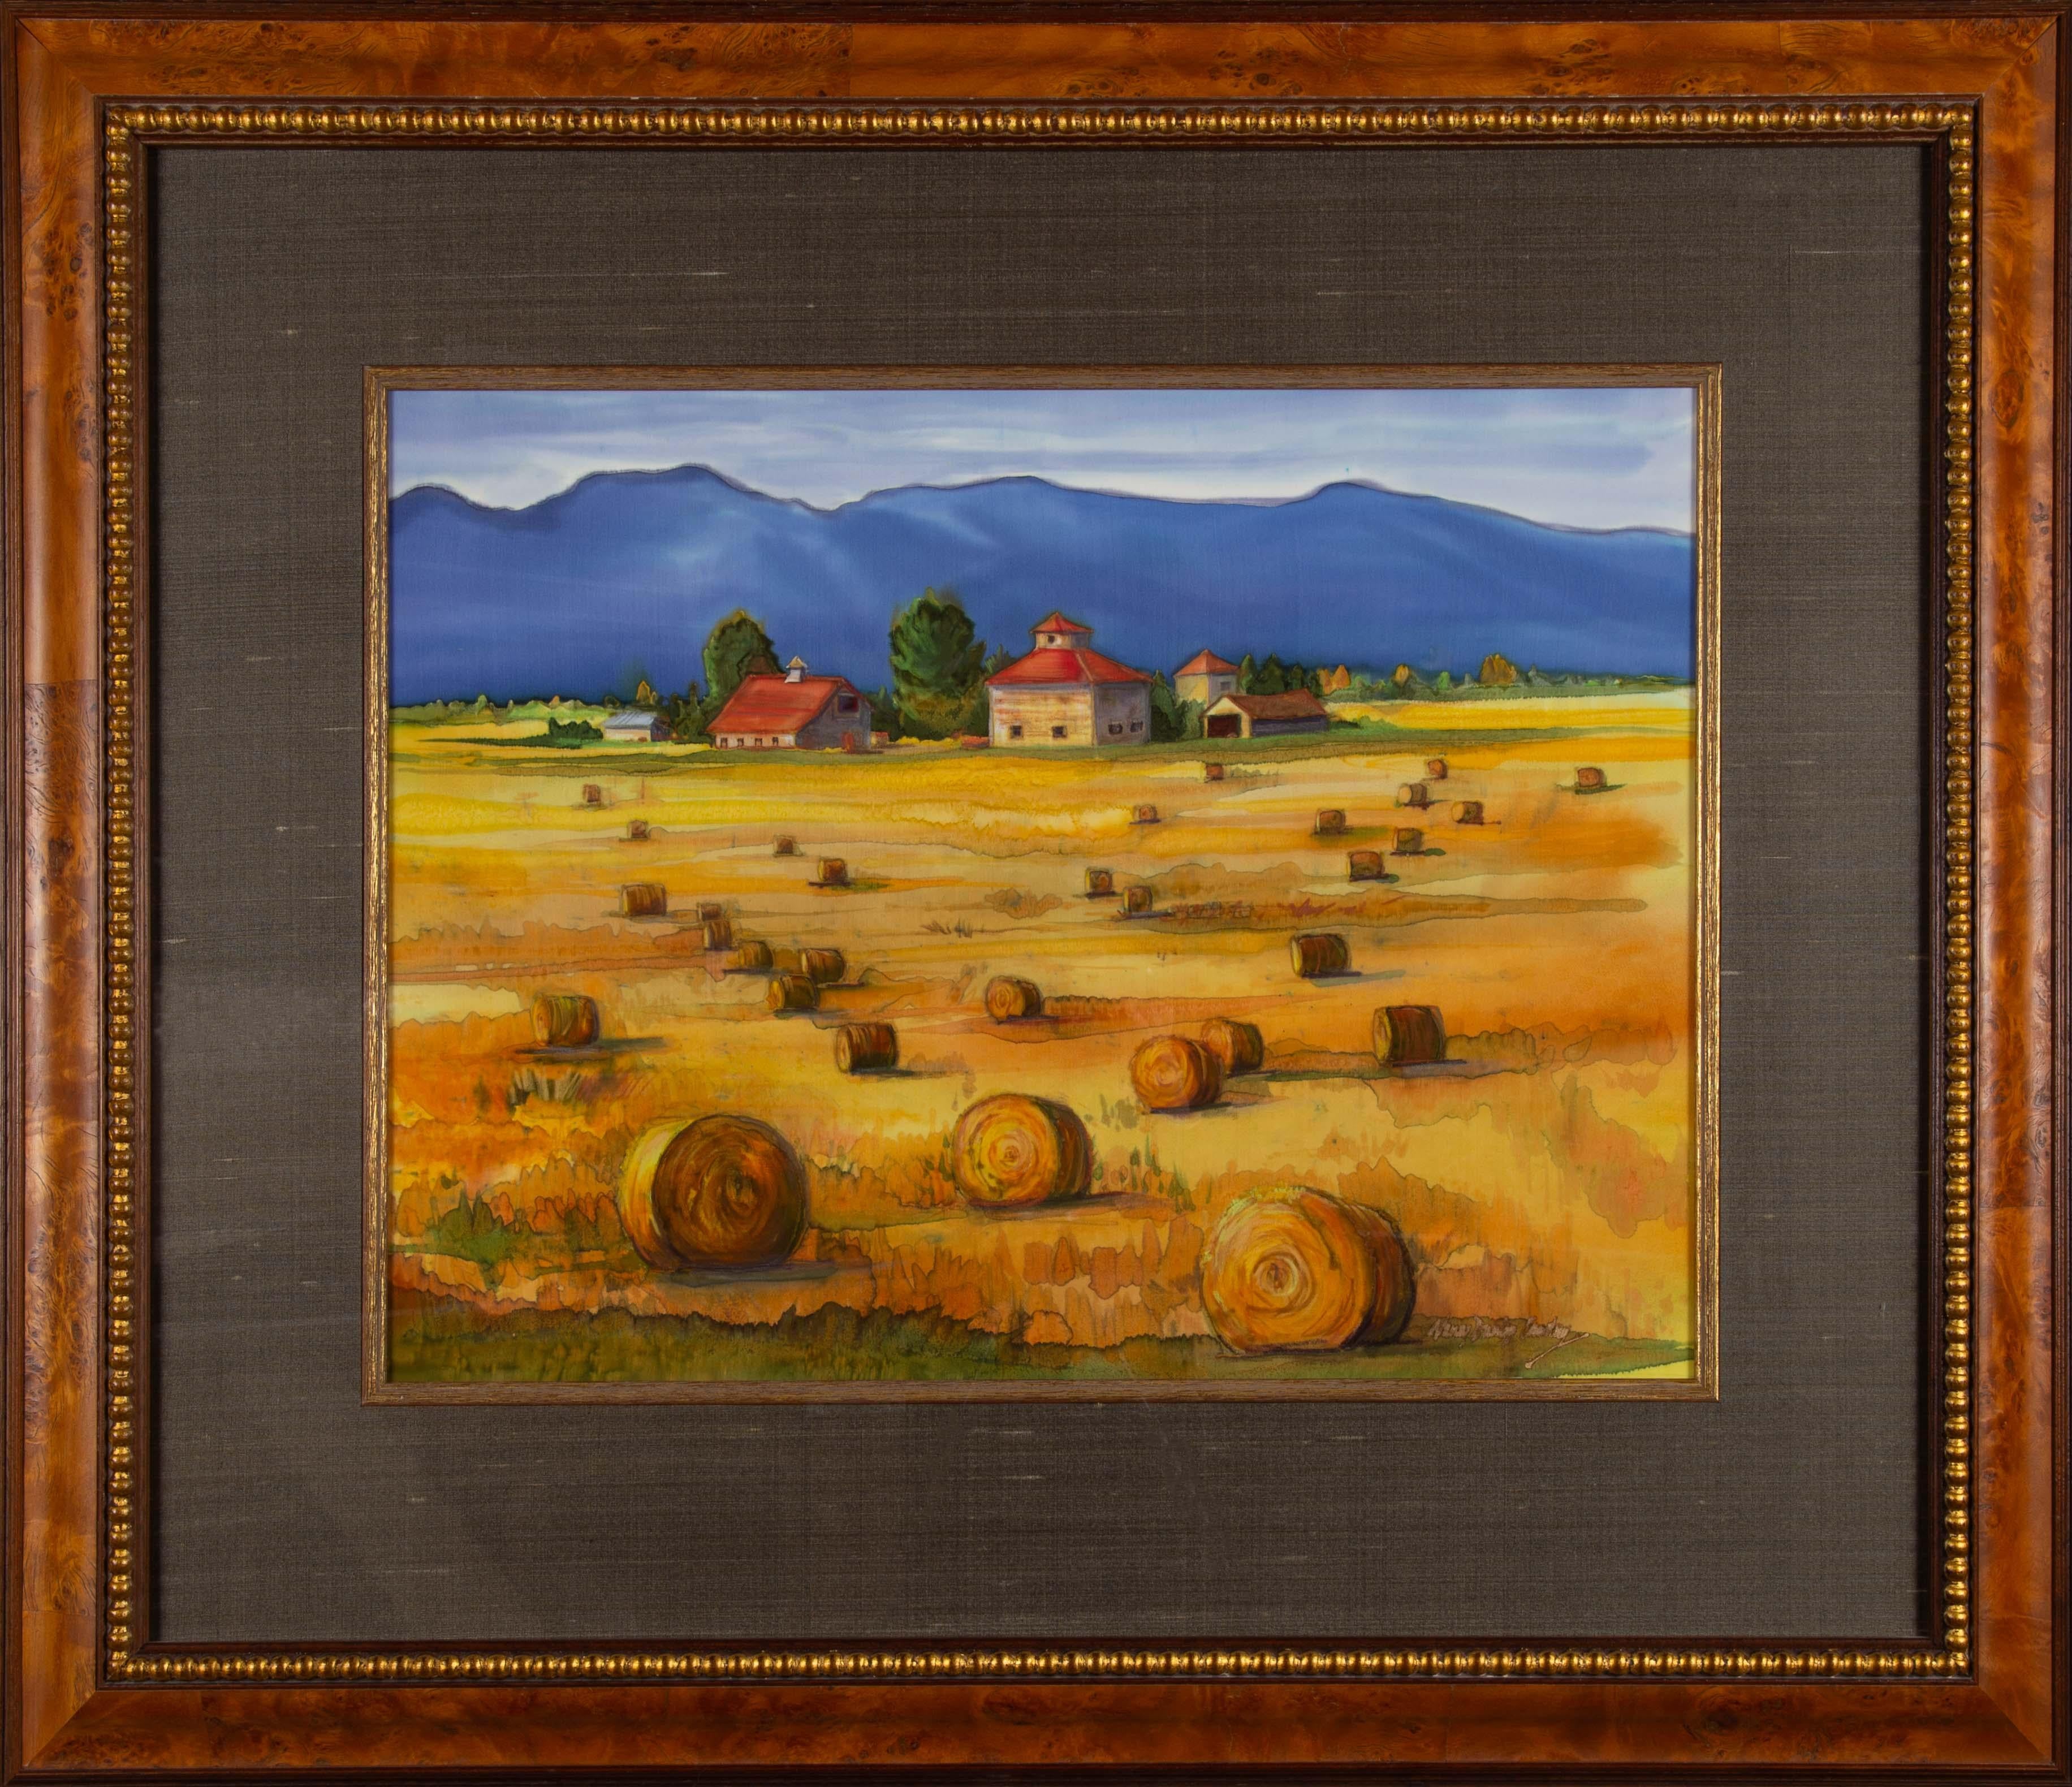 Landscape Painting Nancy Dunlop Cawdrey - Peinture de la vallée louée teintée à la ferme sur soie, paysage de l'art occidental